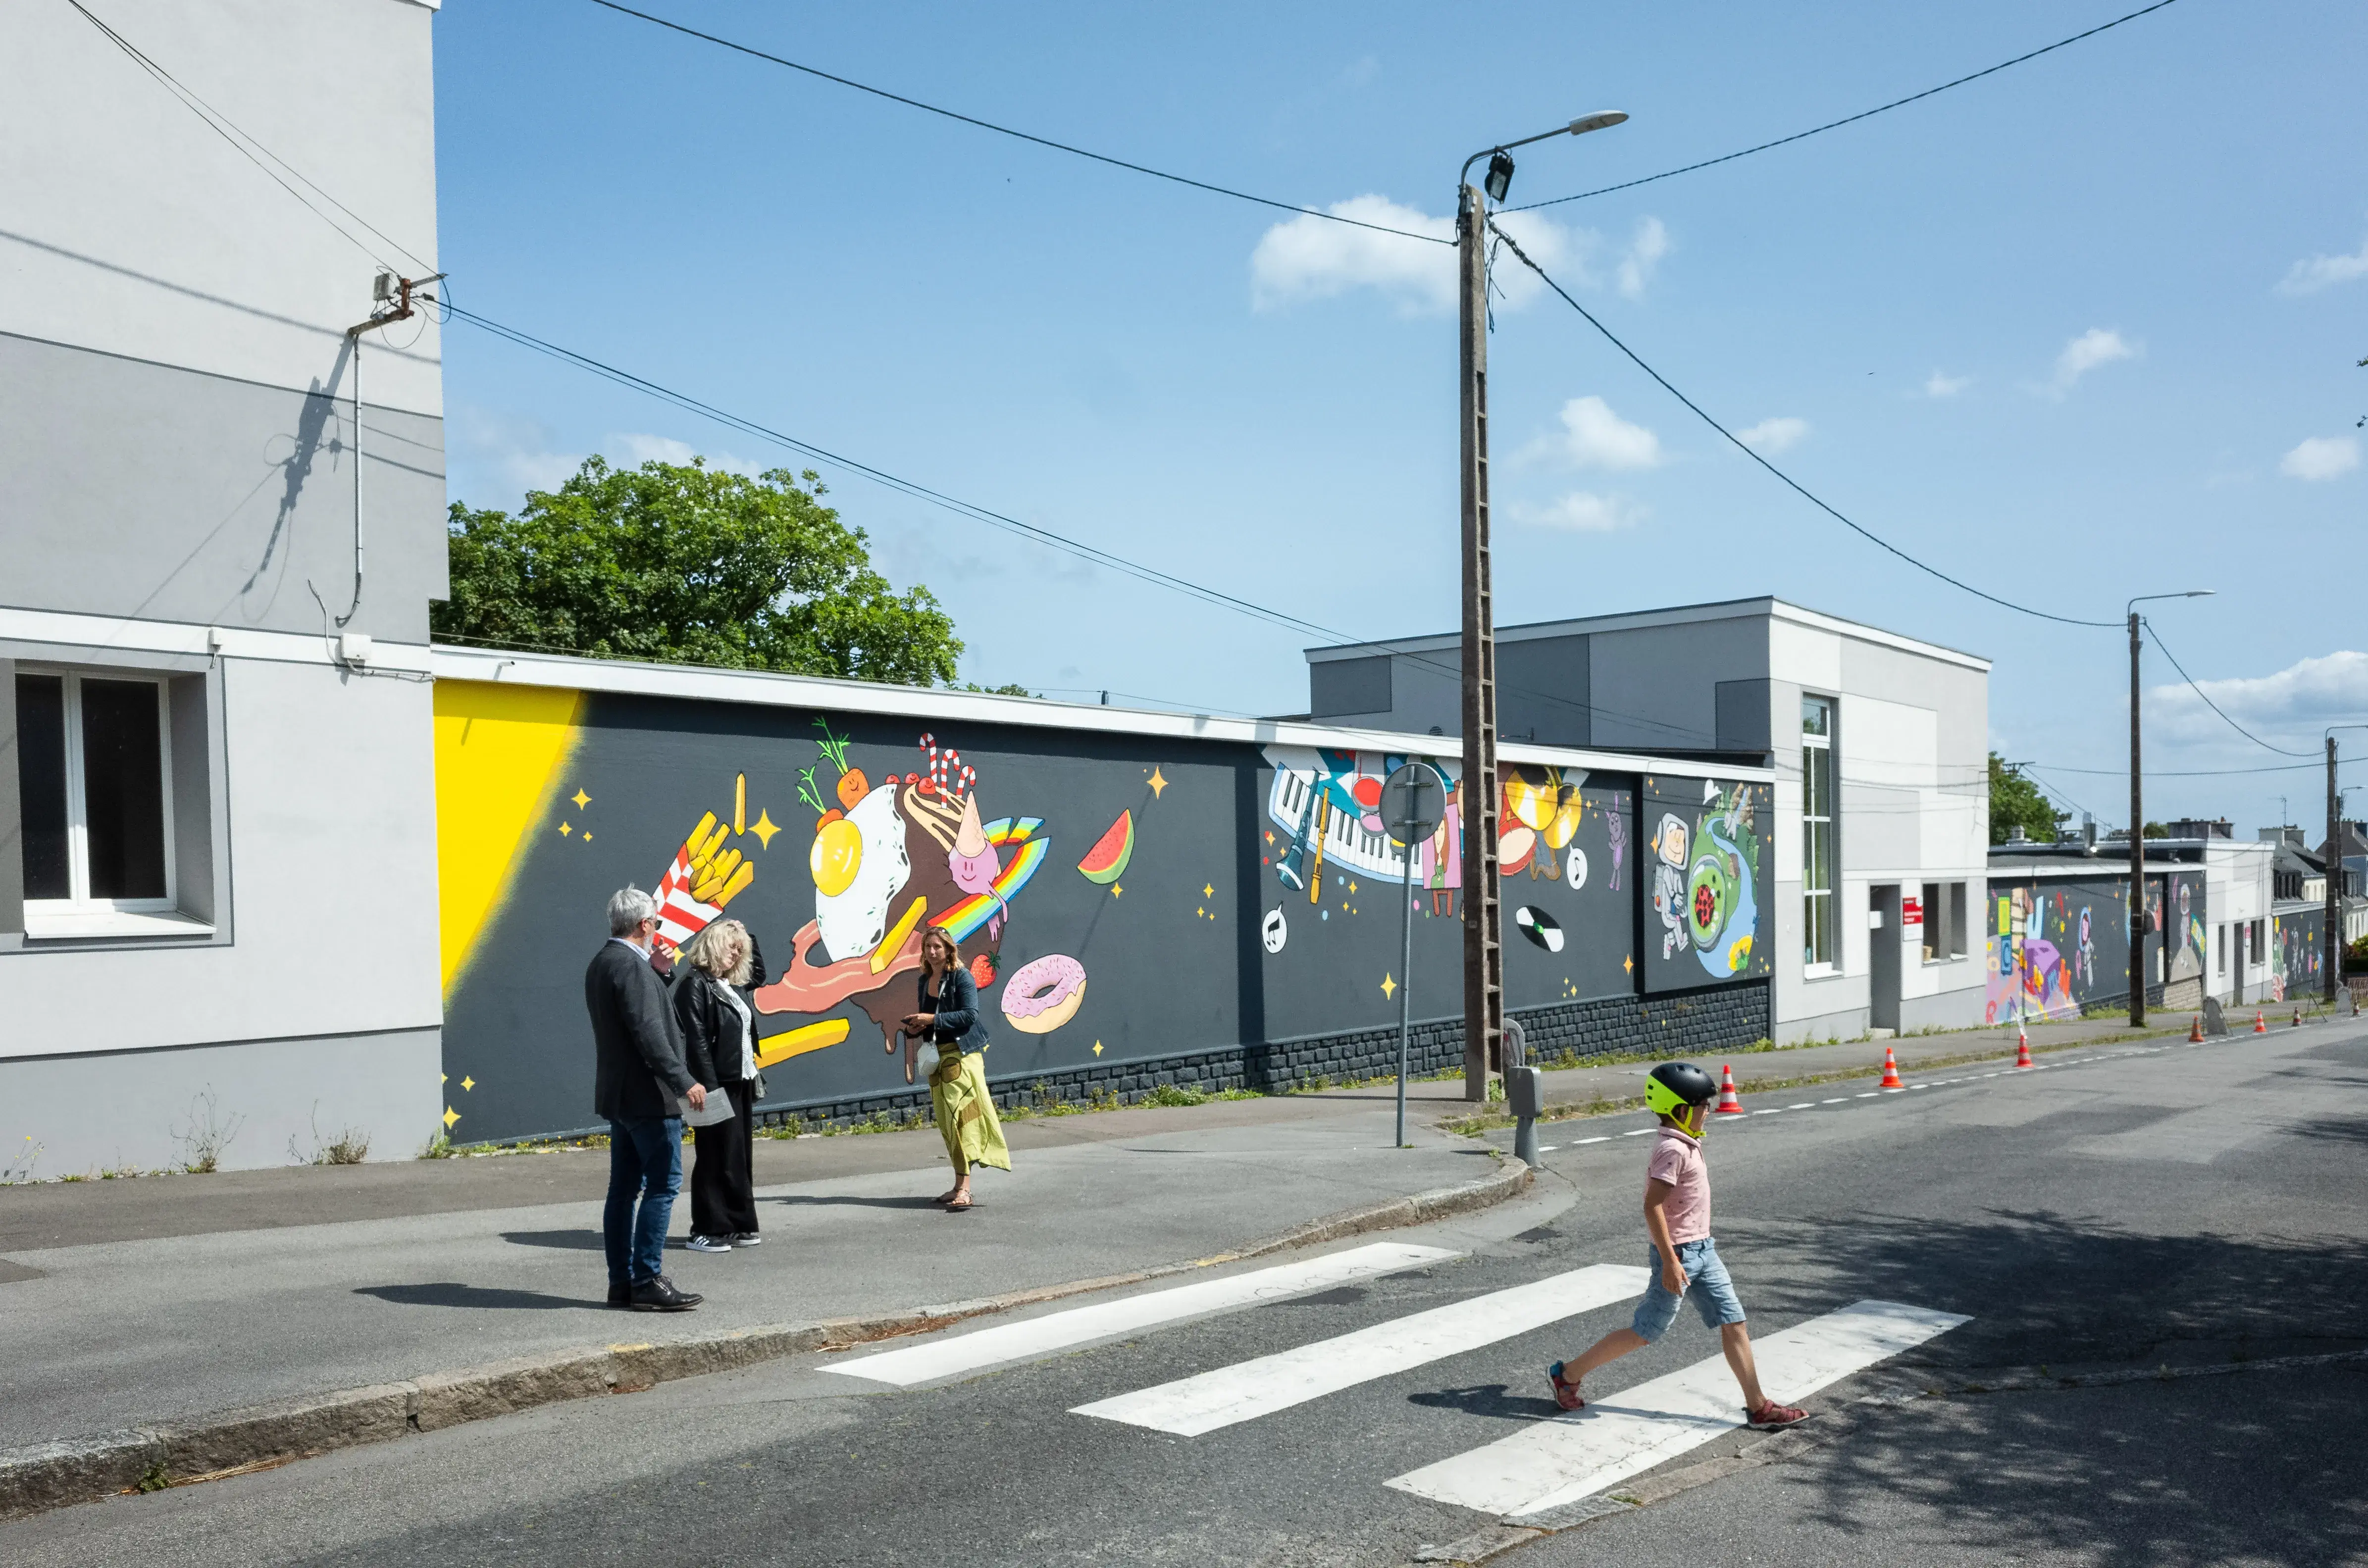 Des personnes marchent devant une grand mur peint.